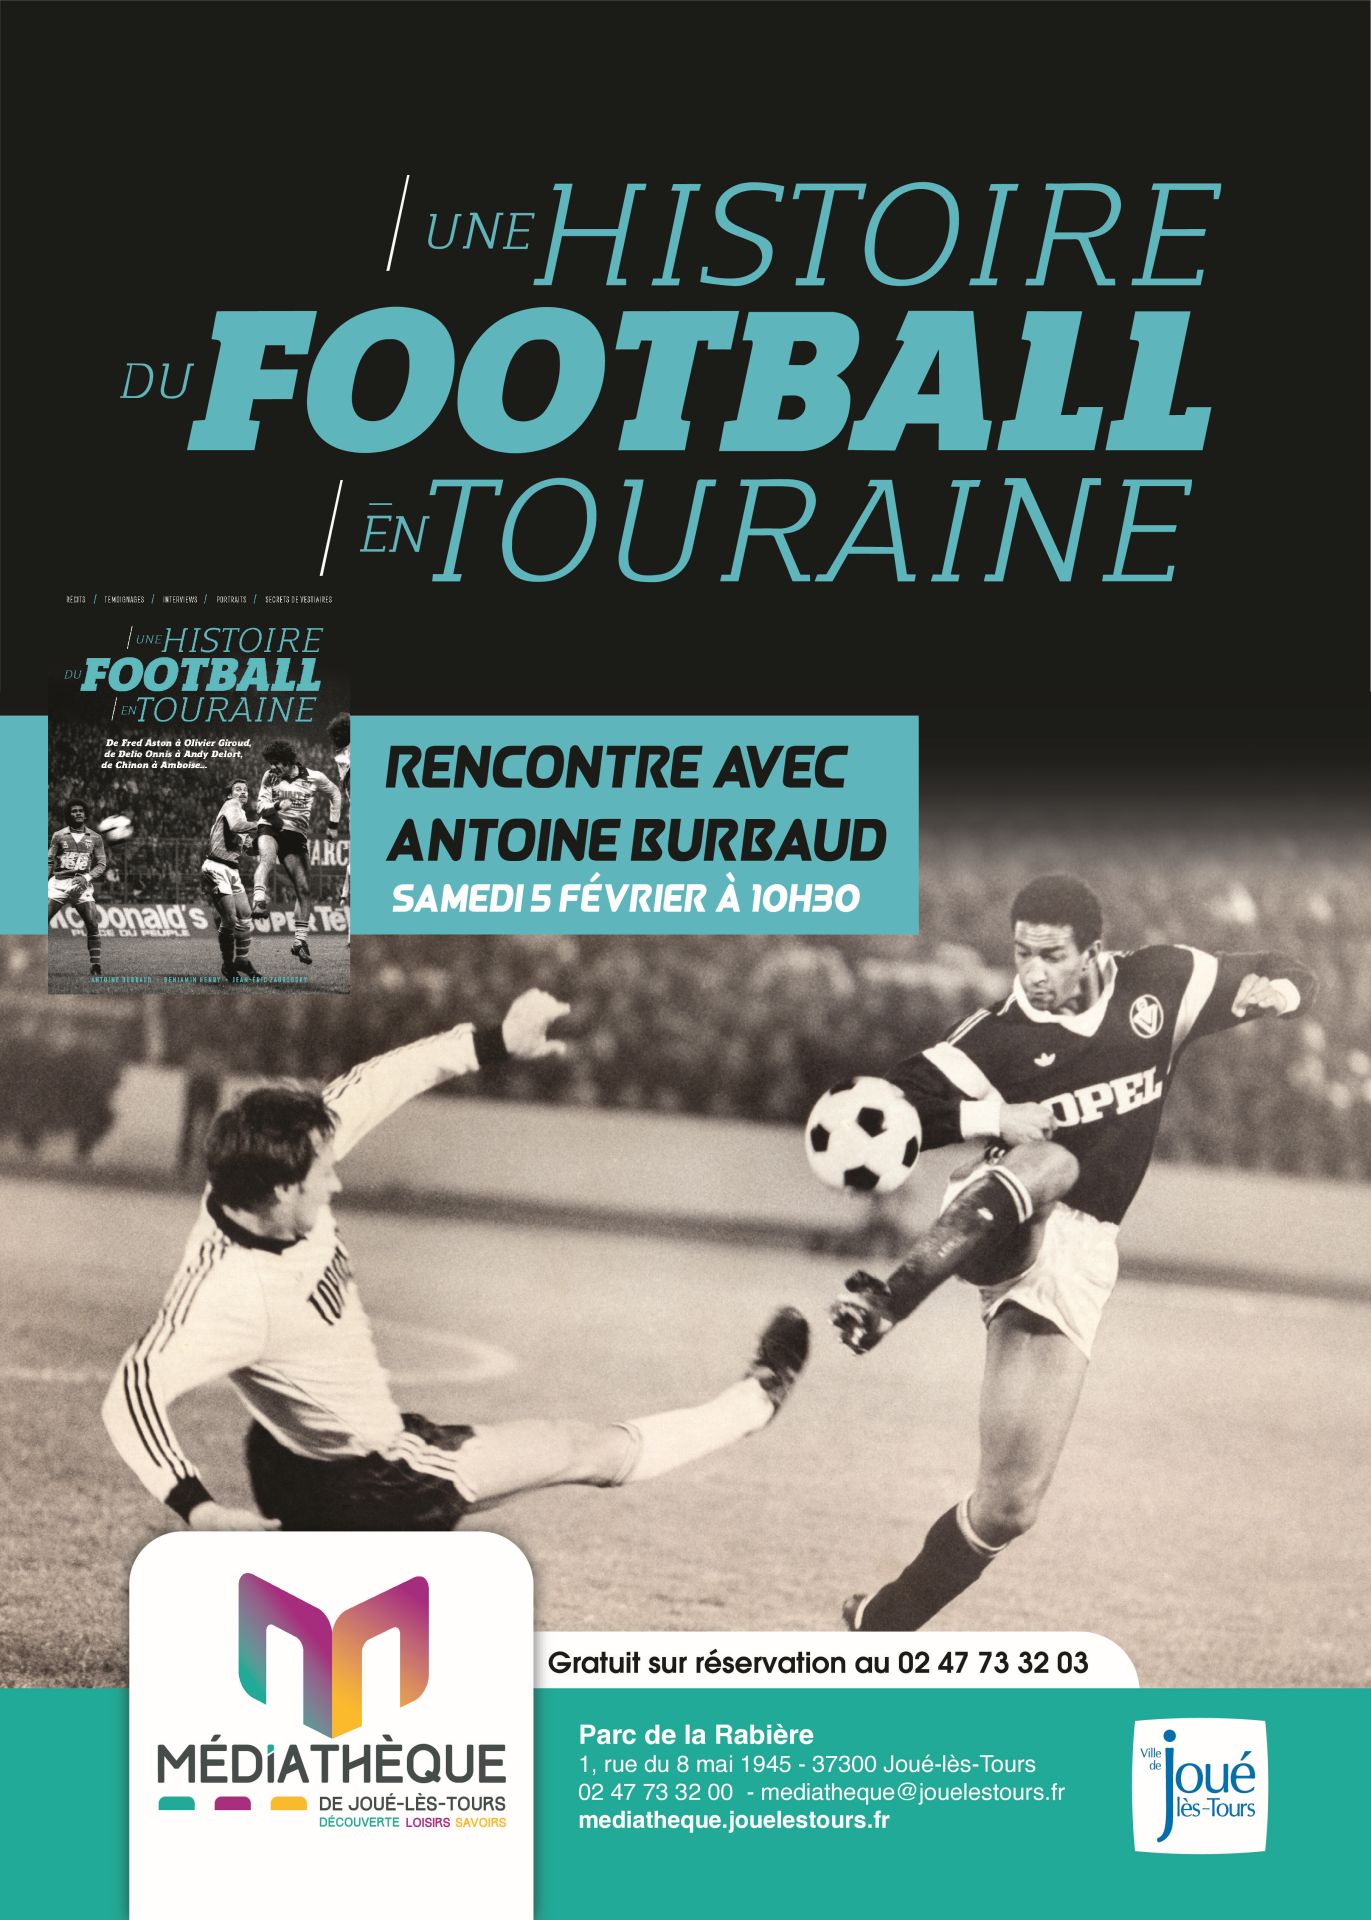 l'histoire du football ©Ville de Joué-lès-Tours